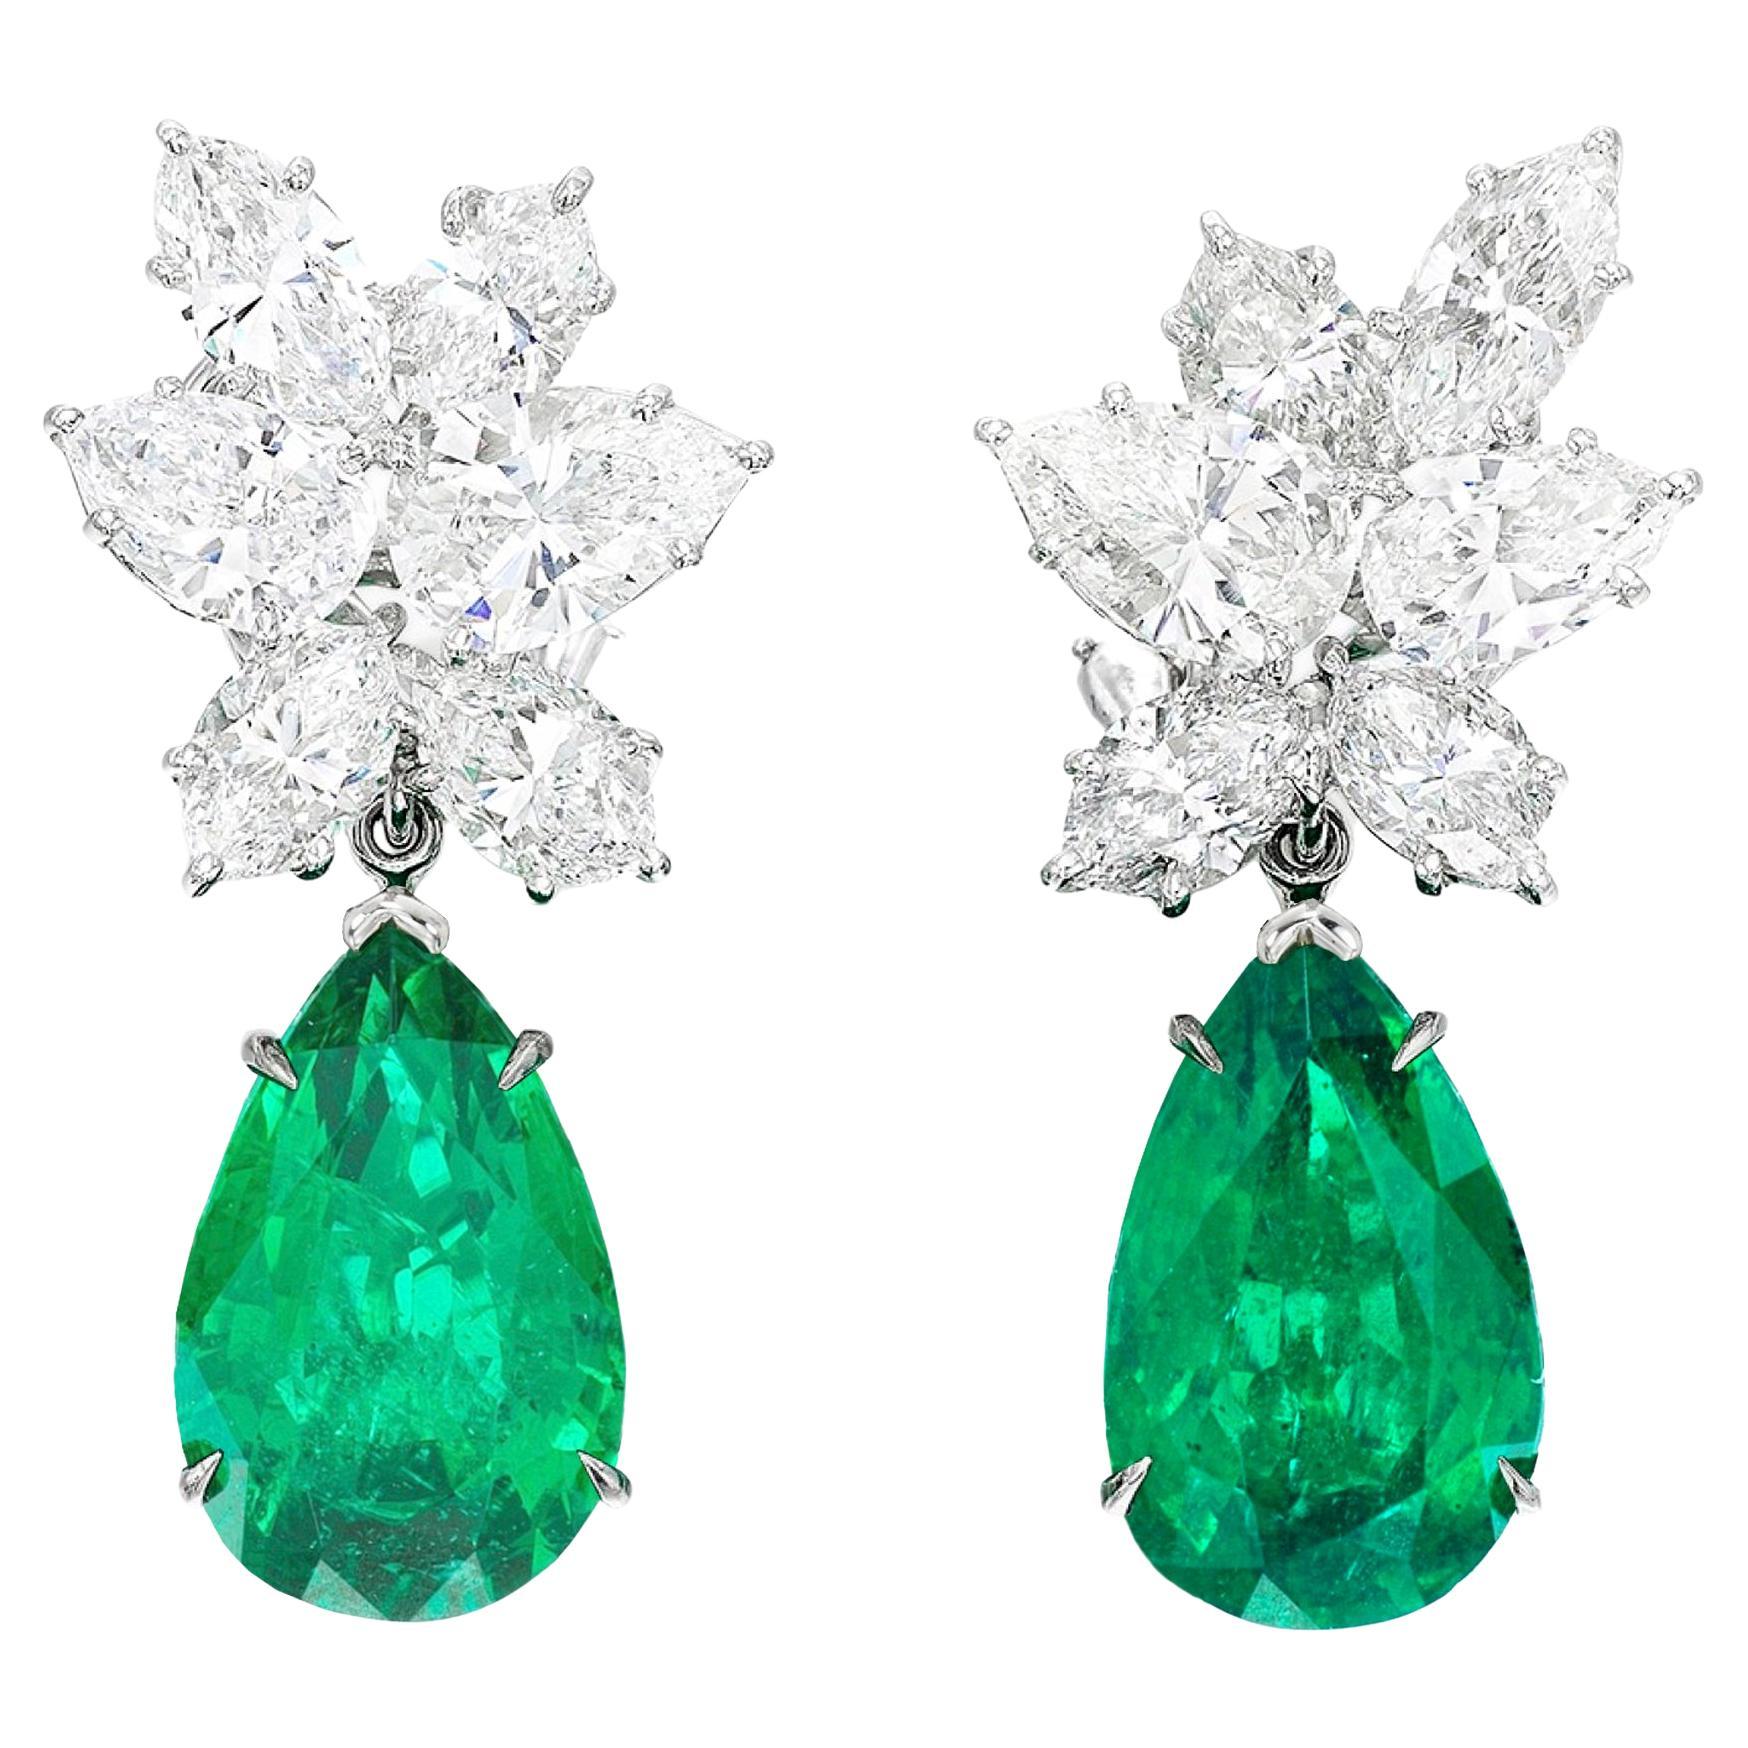 Certified 8 Carat Pear Cut Green Emeralds Diamond Cluster Earrings For Sale